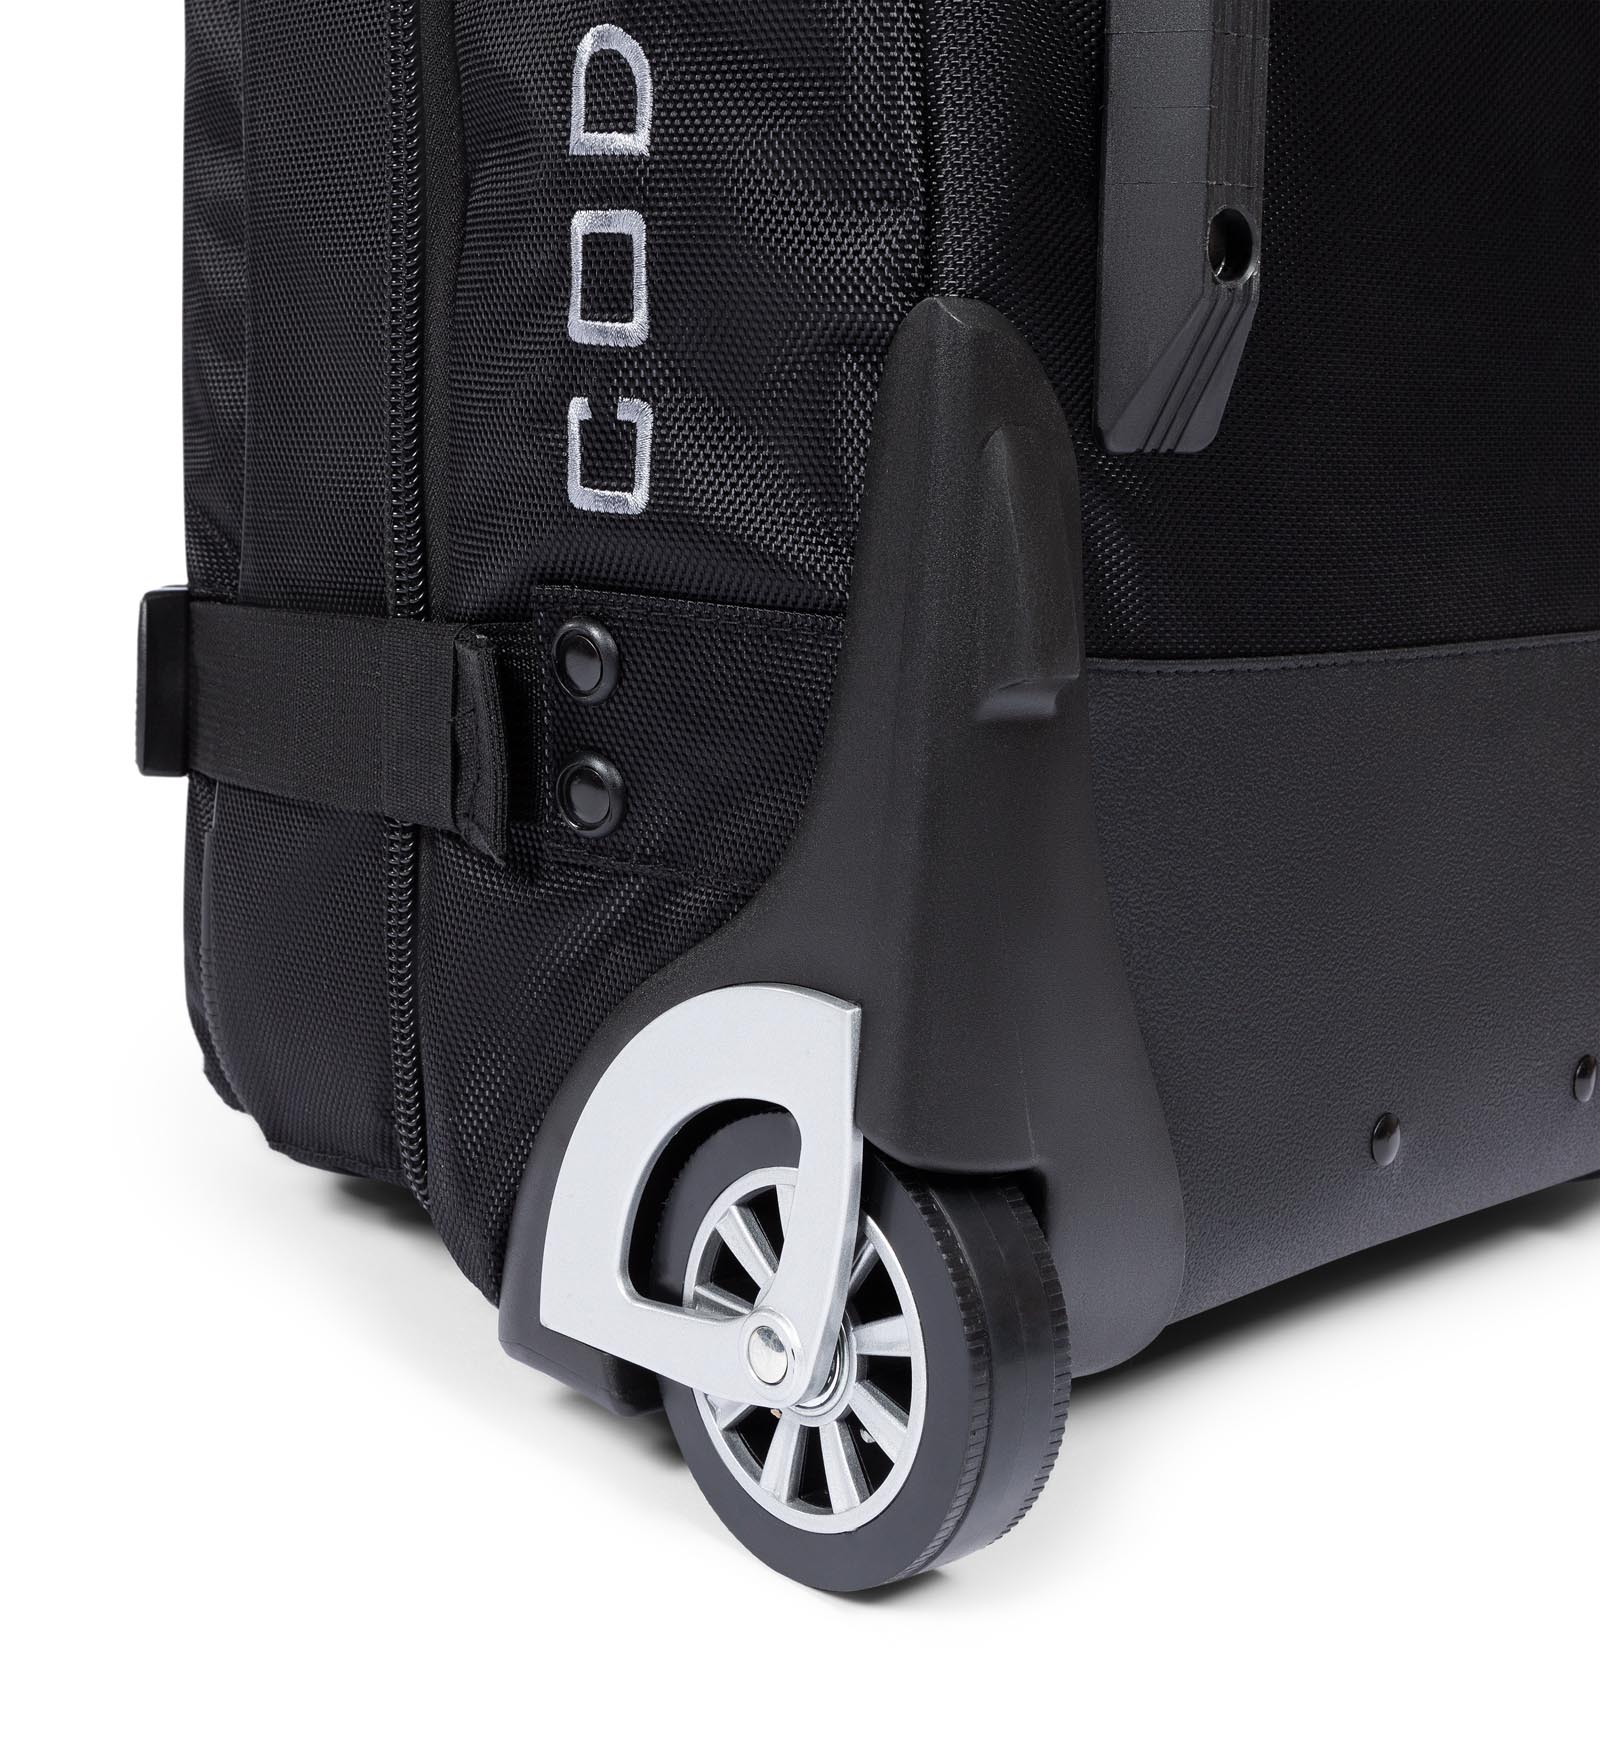 Carry-on Luggage Medium